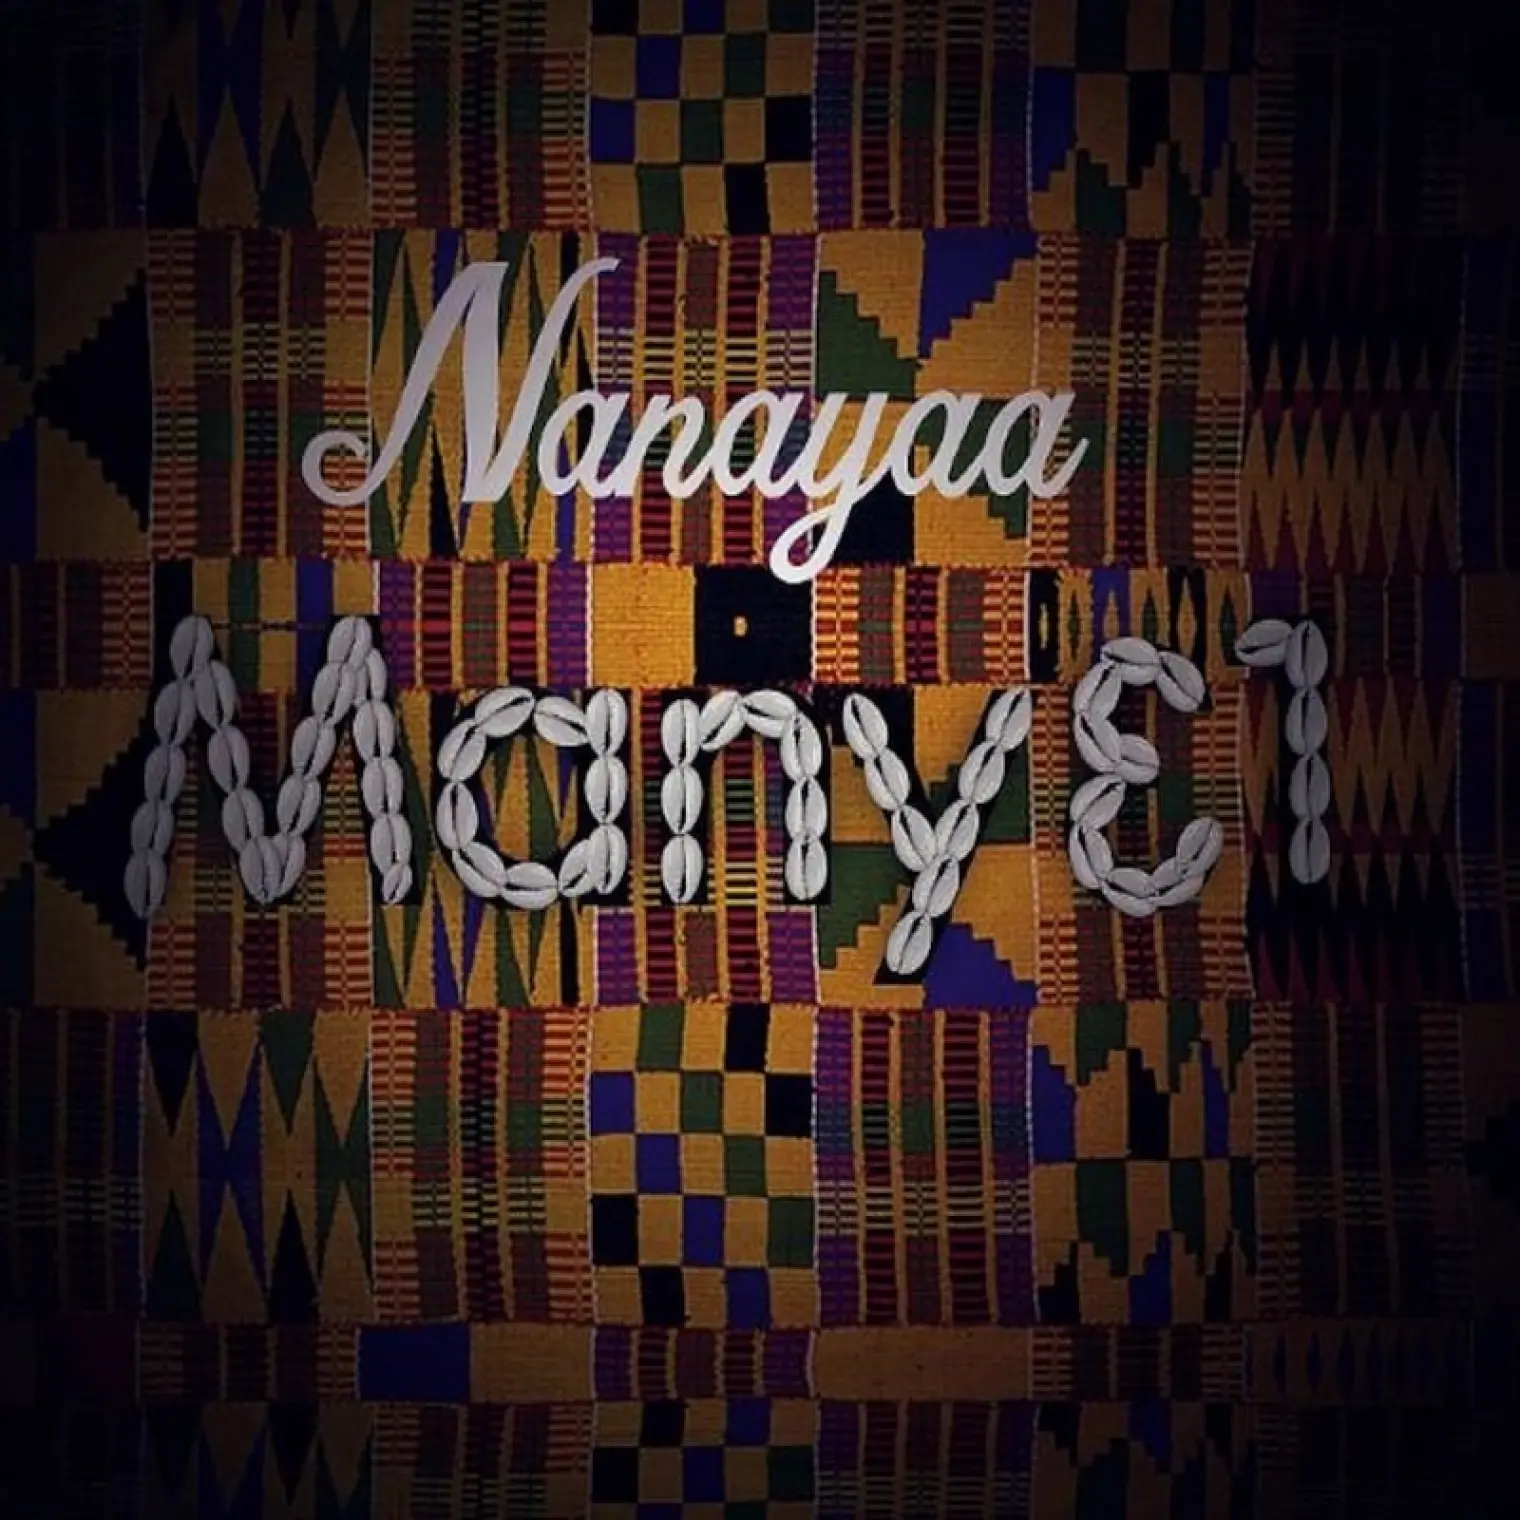 Many3 1 -  Nanayaa 